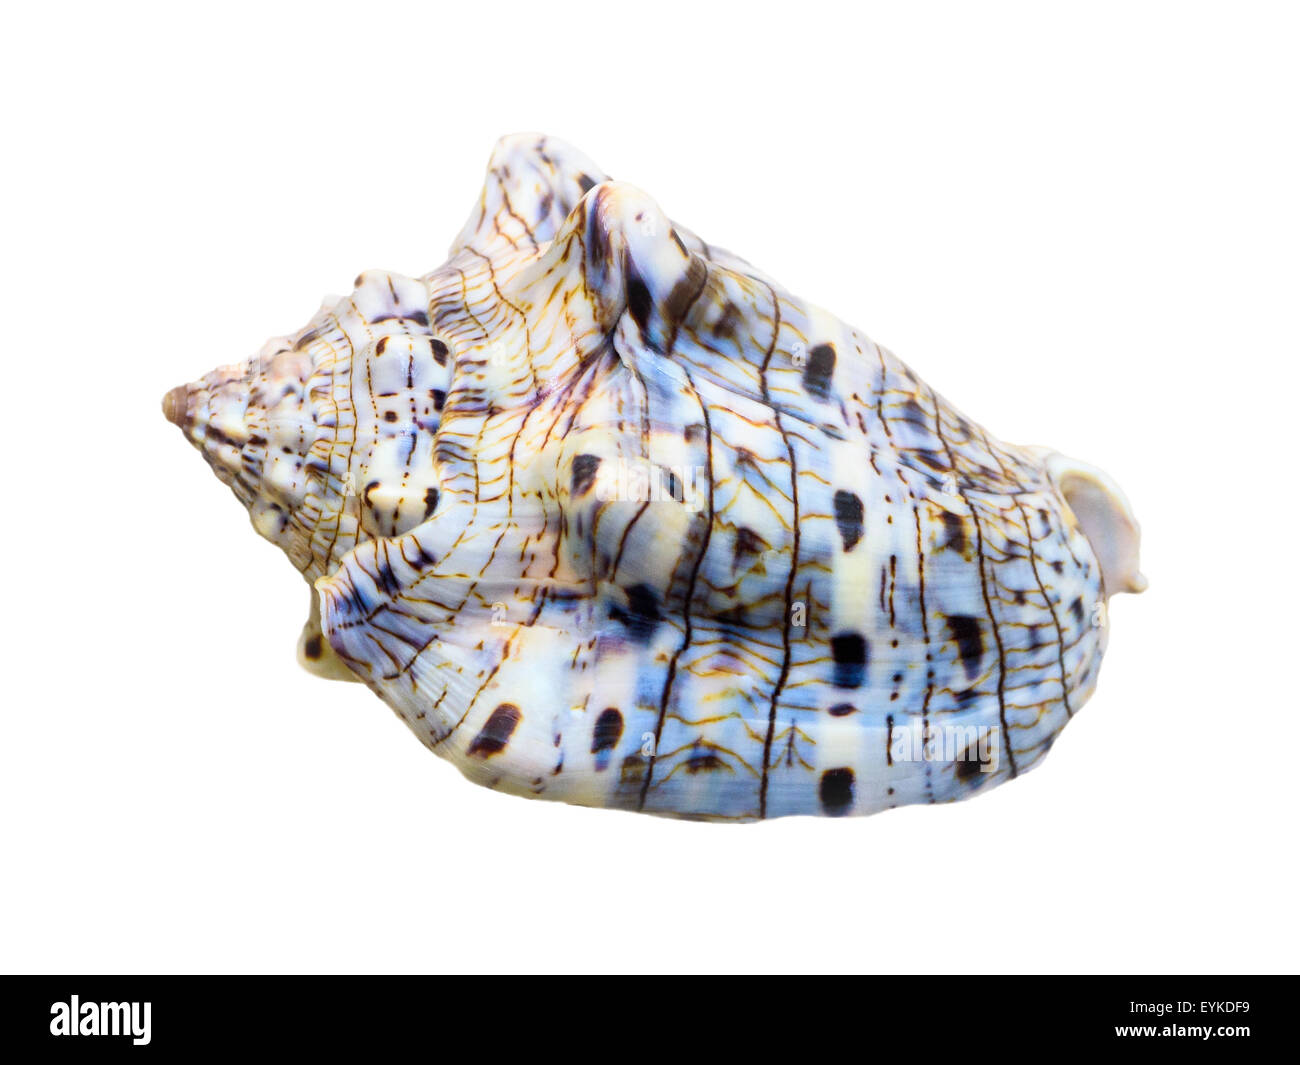 Guscio della voluta Musica o musica voluta è una specie di lumaca di mare, marine mollusco gasteropode della famiglia Volutidae isolato Foto Stock